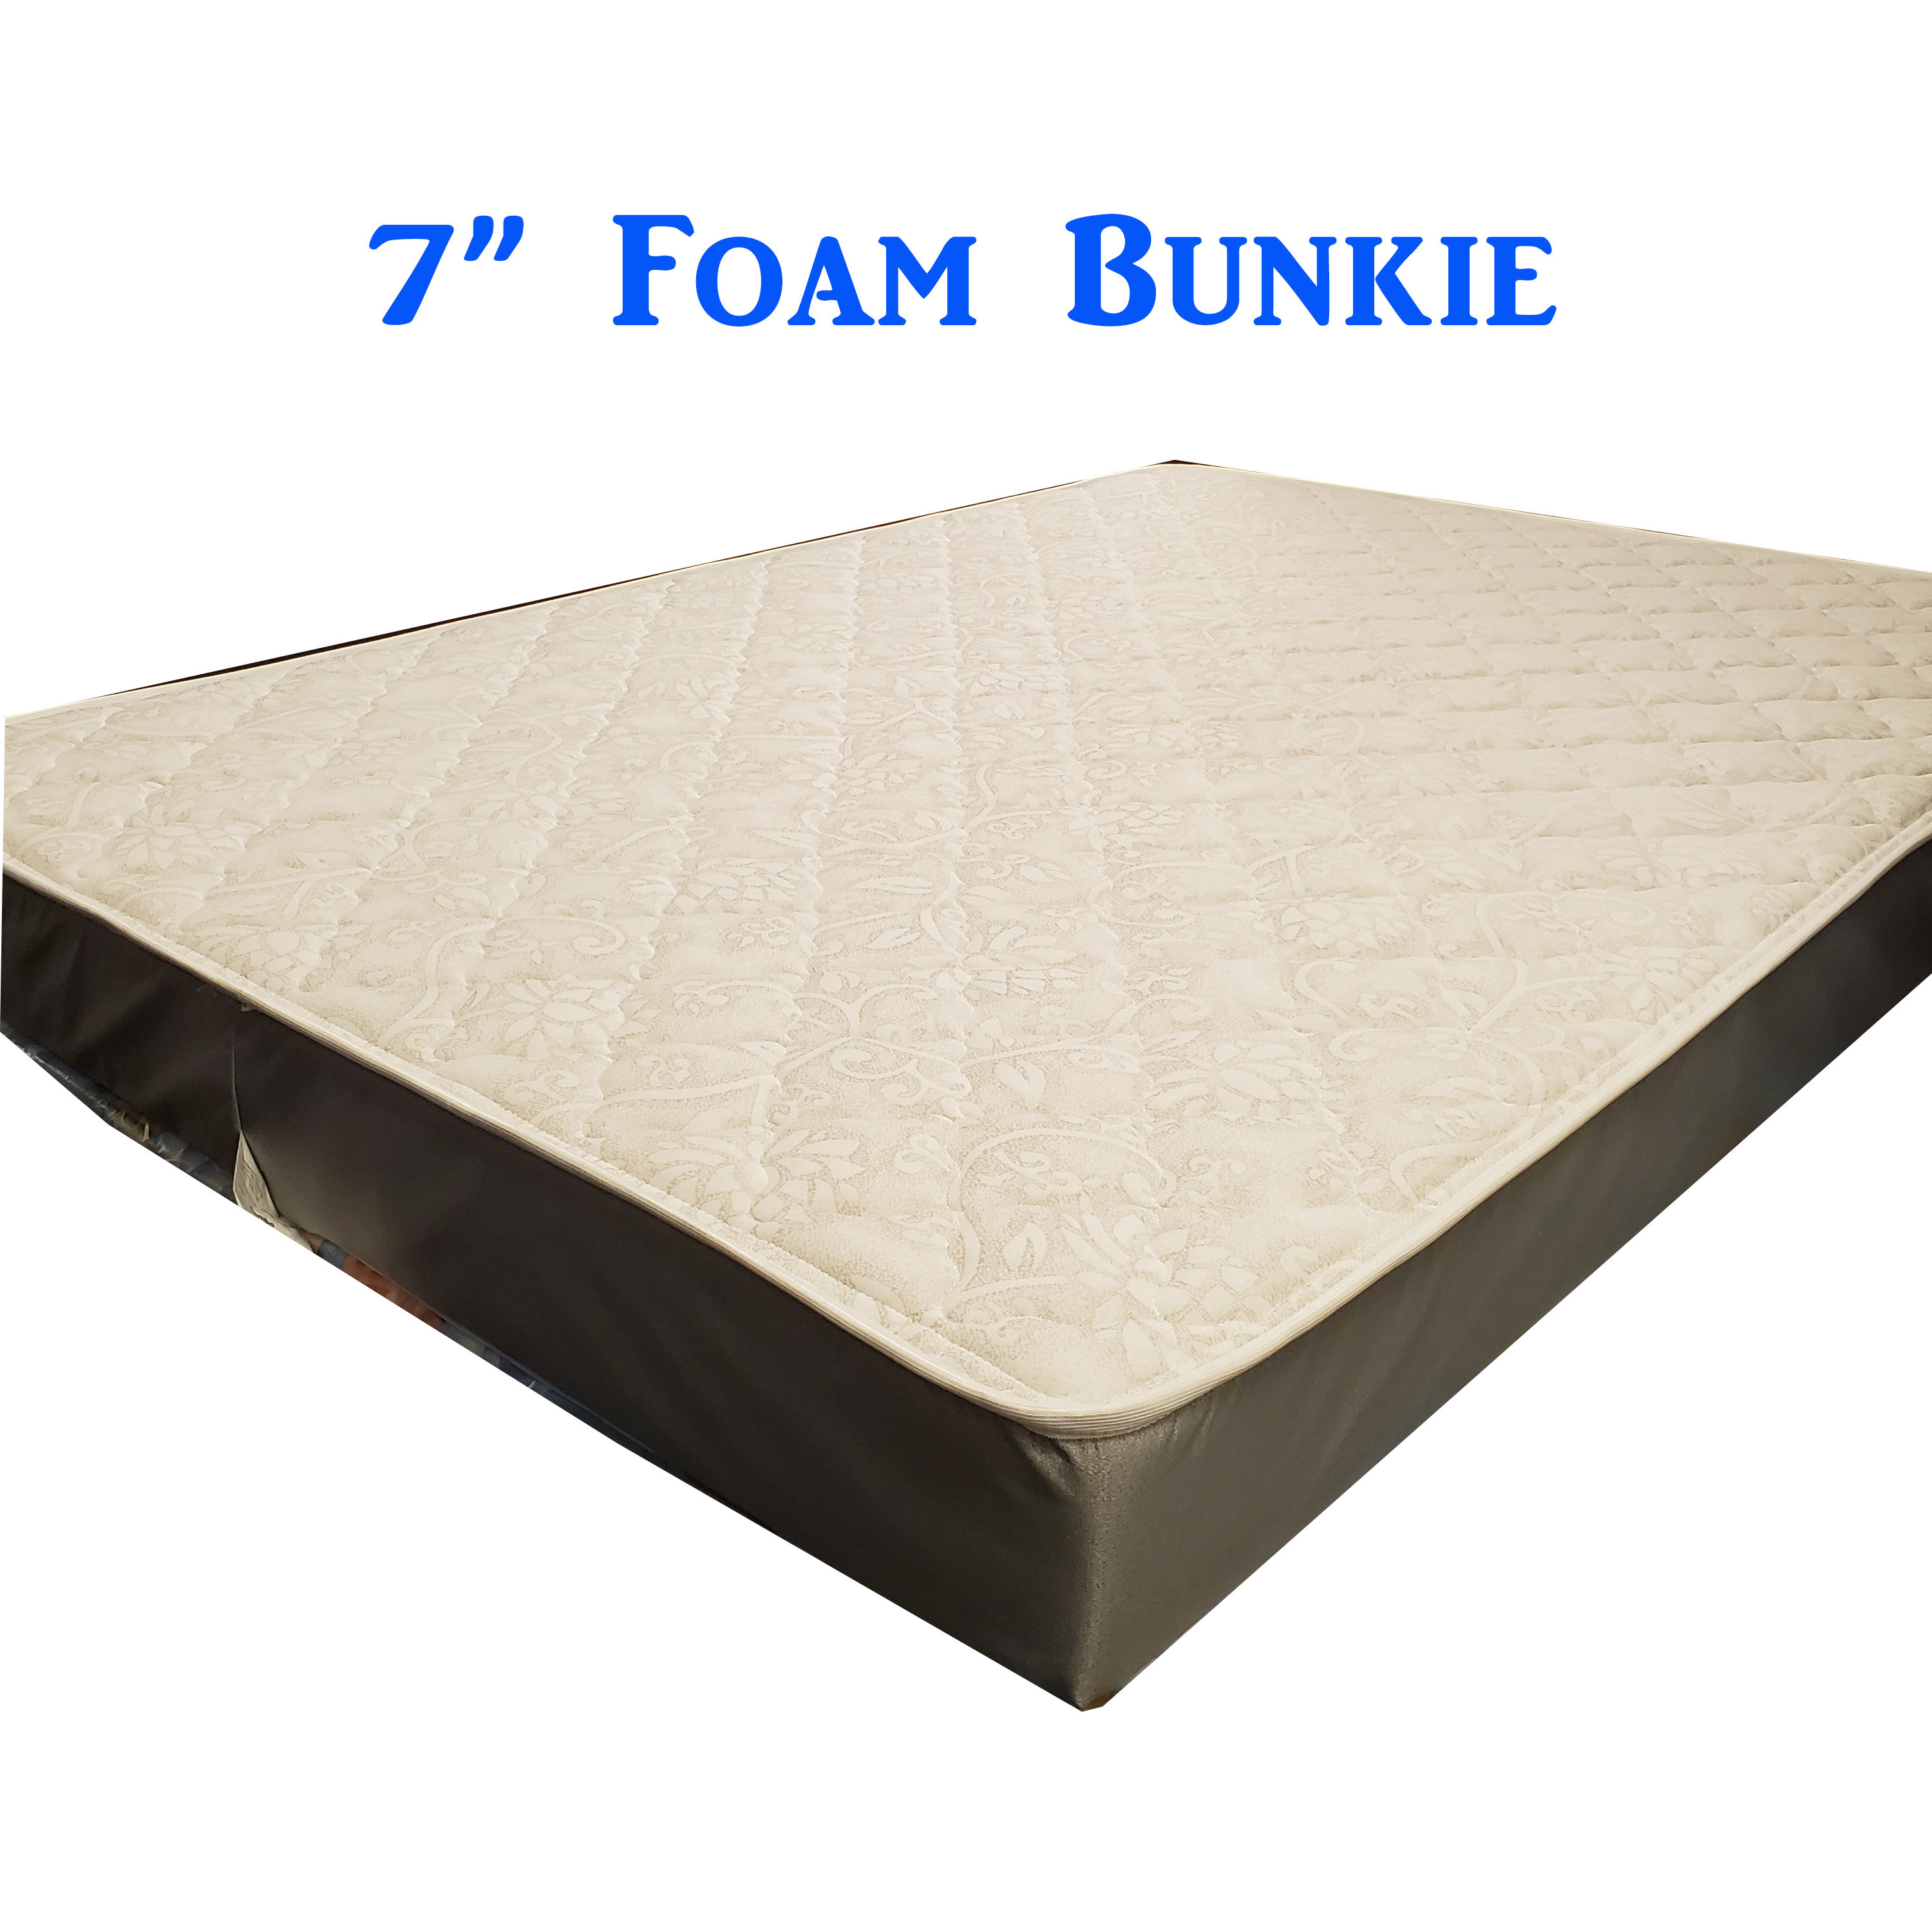 *Foam Bunkie 7